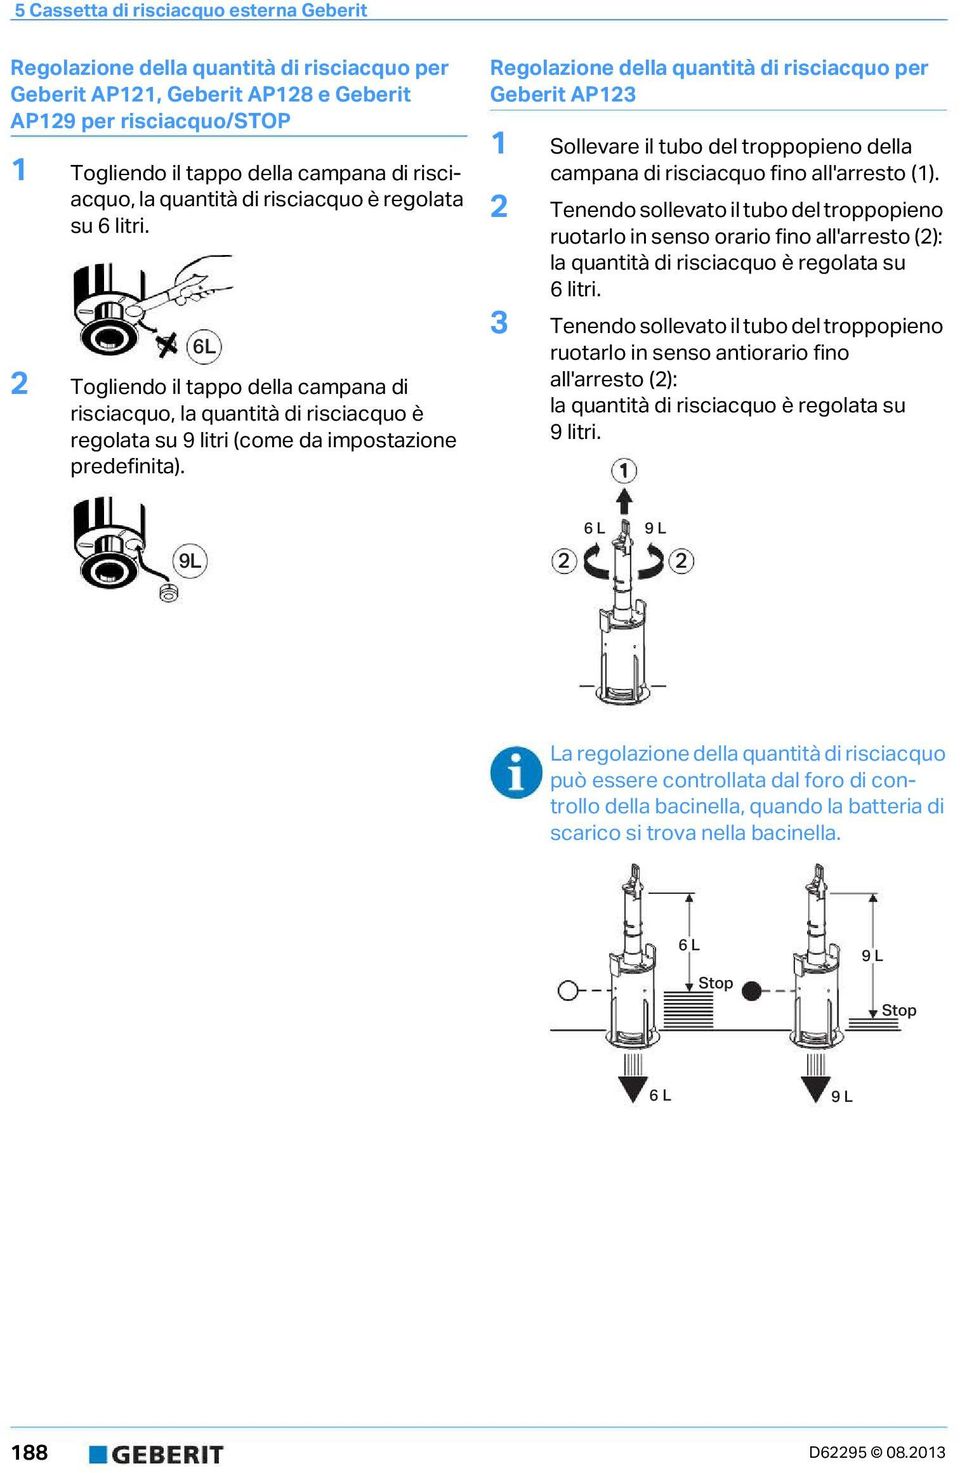 Regolazione della quantità di risciacquo per Geberit AP23 Sollevare il tubo del troppopieno della campana di risciacquo fino all'arresto ().